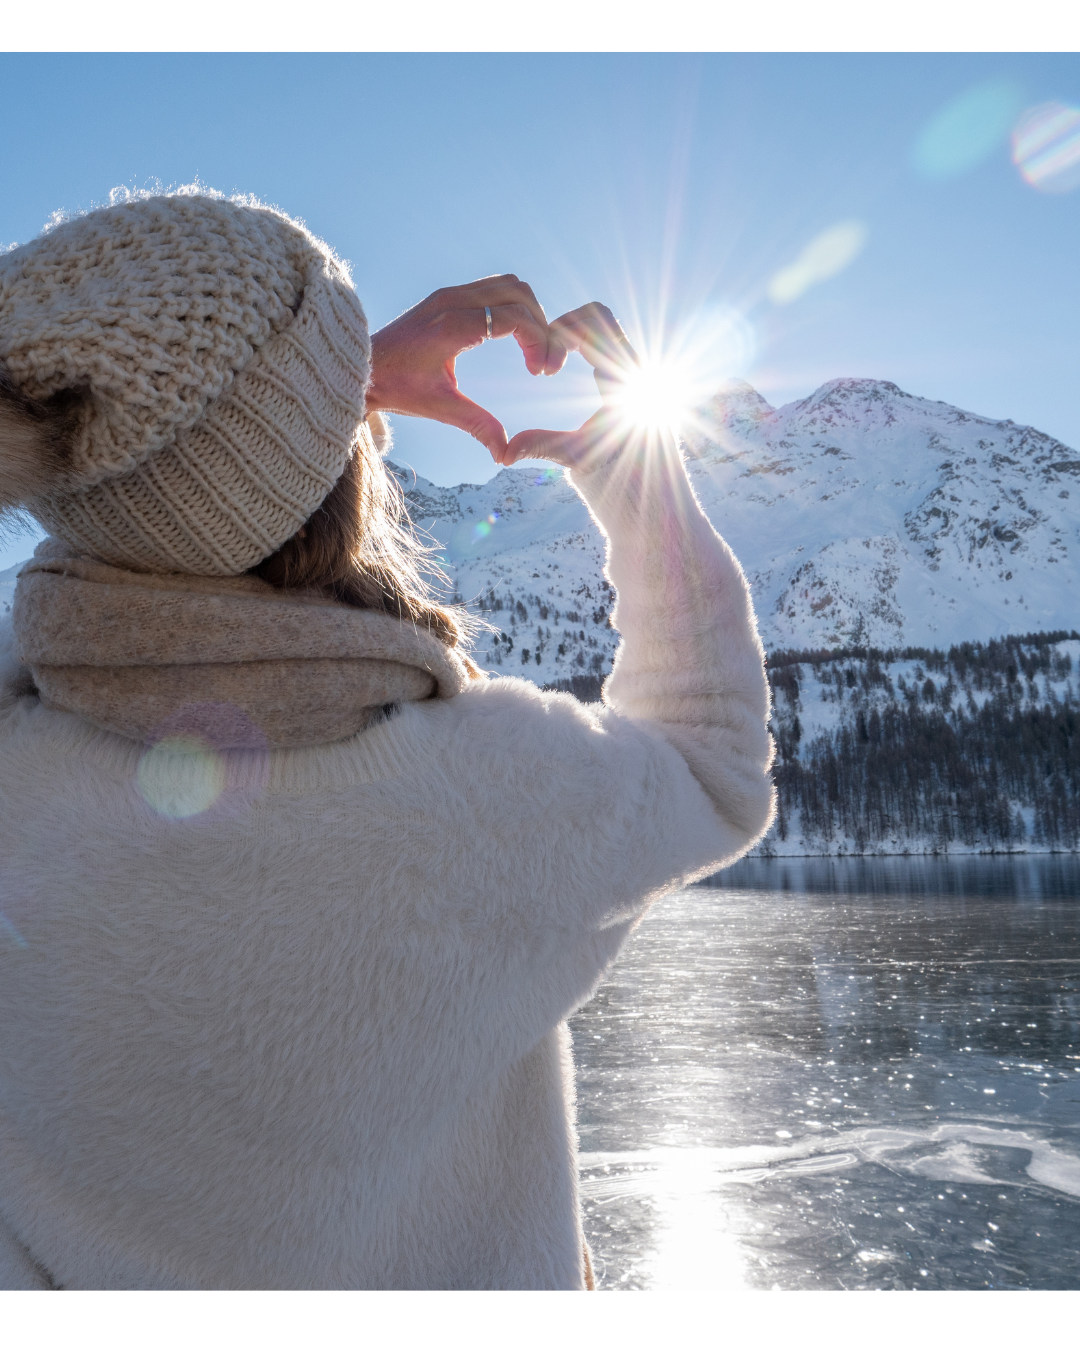 femme face à une montagne, faisant le signe d'un coeur face au soleil, habillée chaudement pour l'hiver